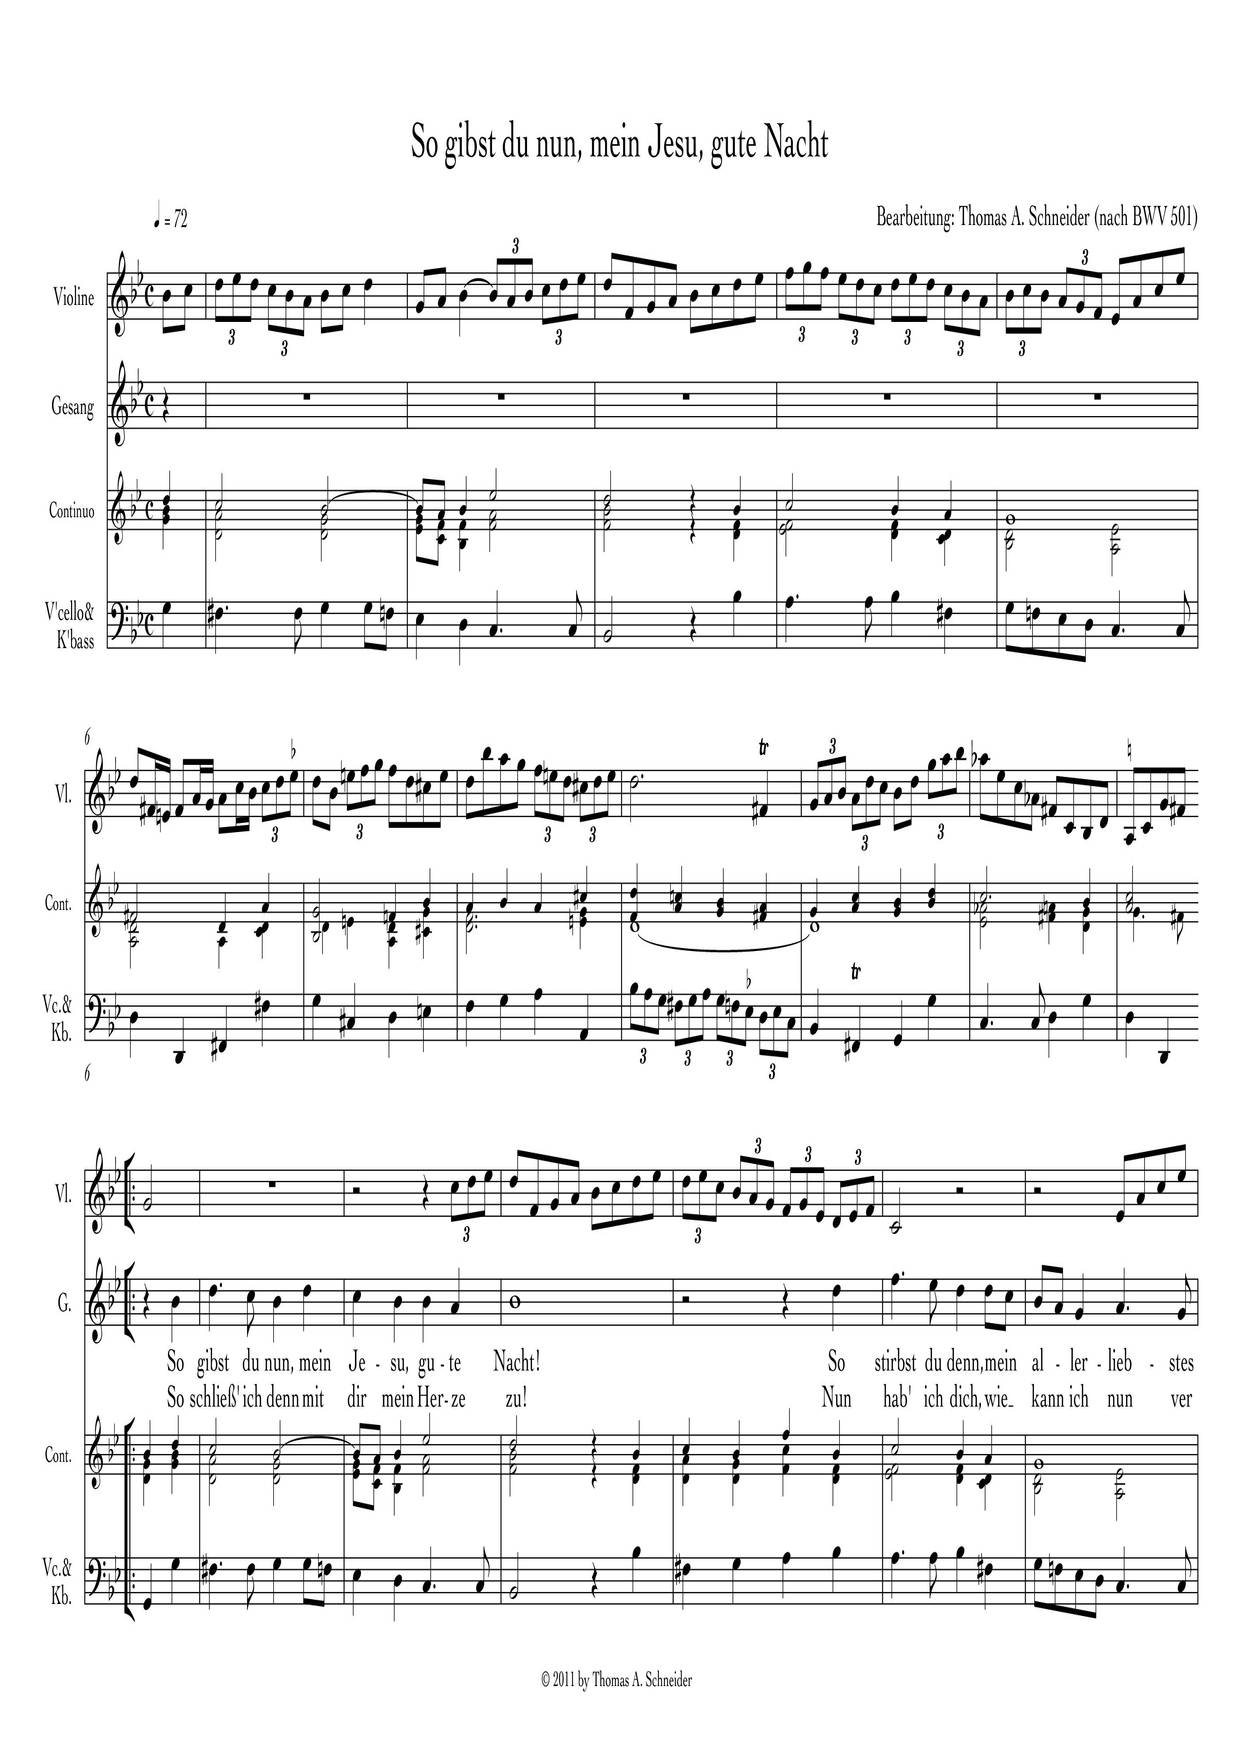 So Gibst Du Nun, Mein Jesu, Gute Nacht, BWV 501 Score